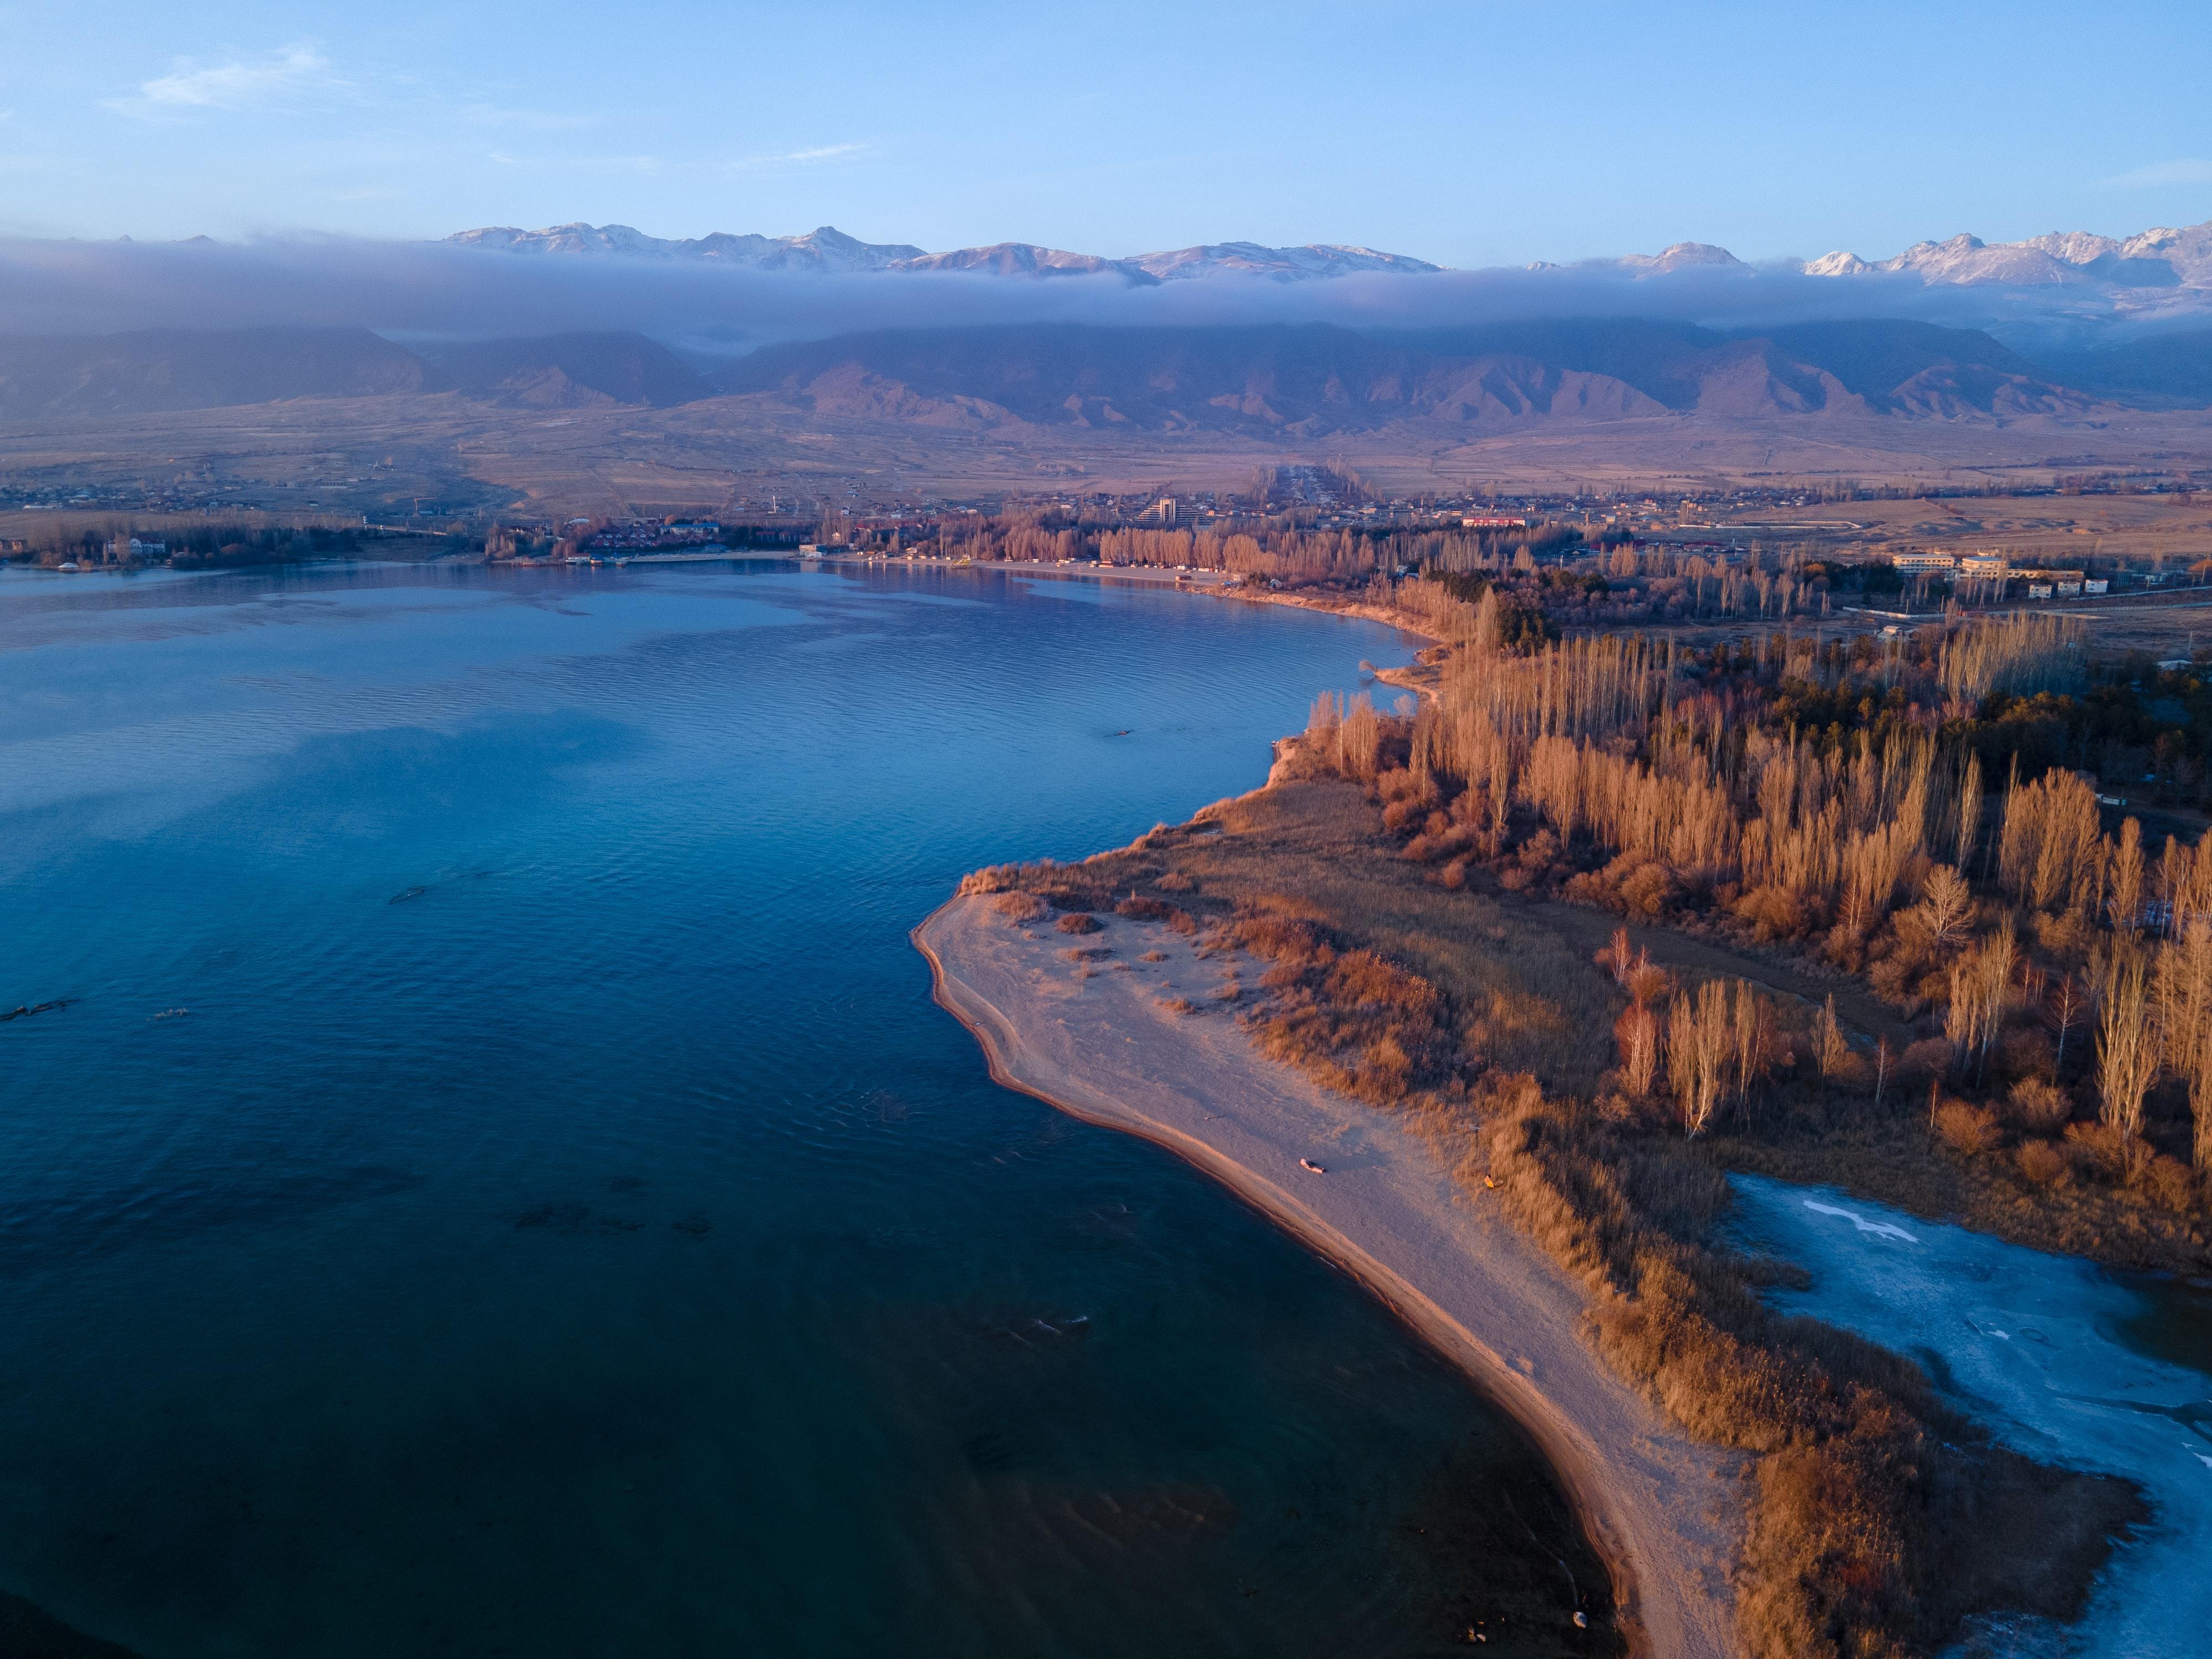 Issyk-Kul (Kyrgyzstan) lake in winter © Mike Dudin / Unsplash